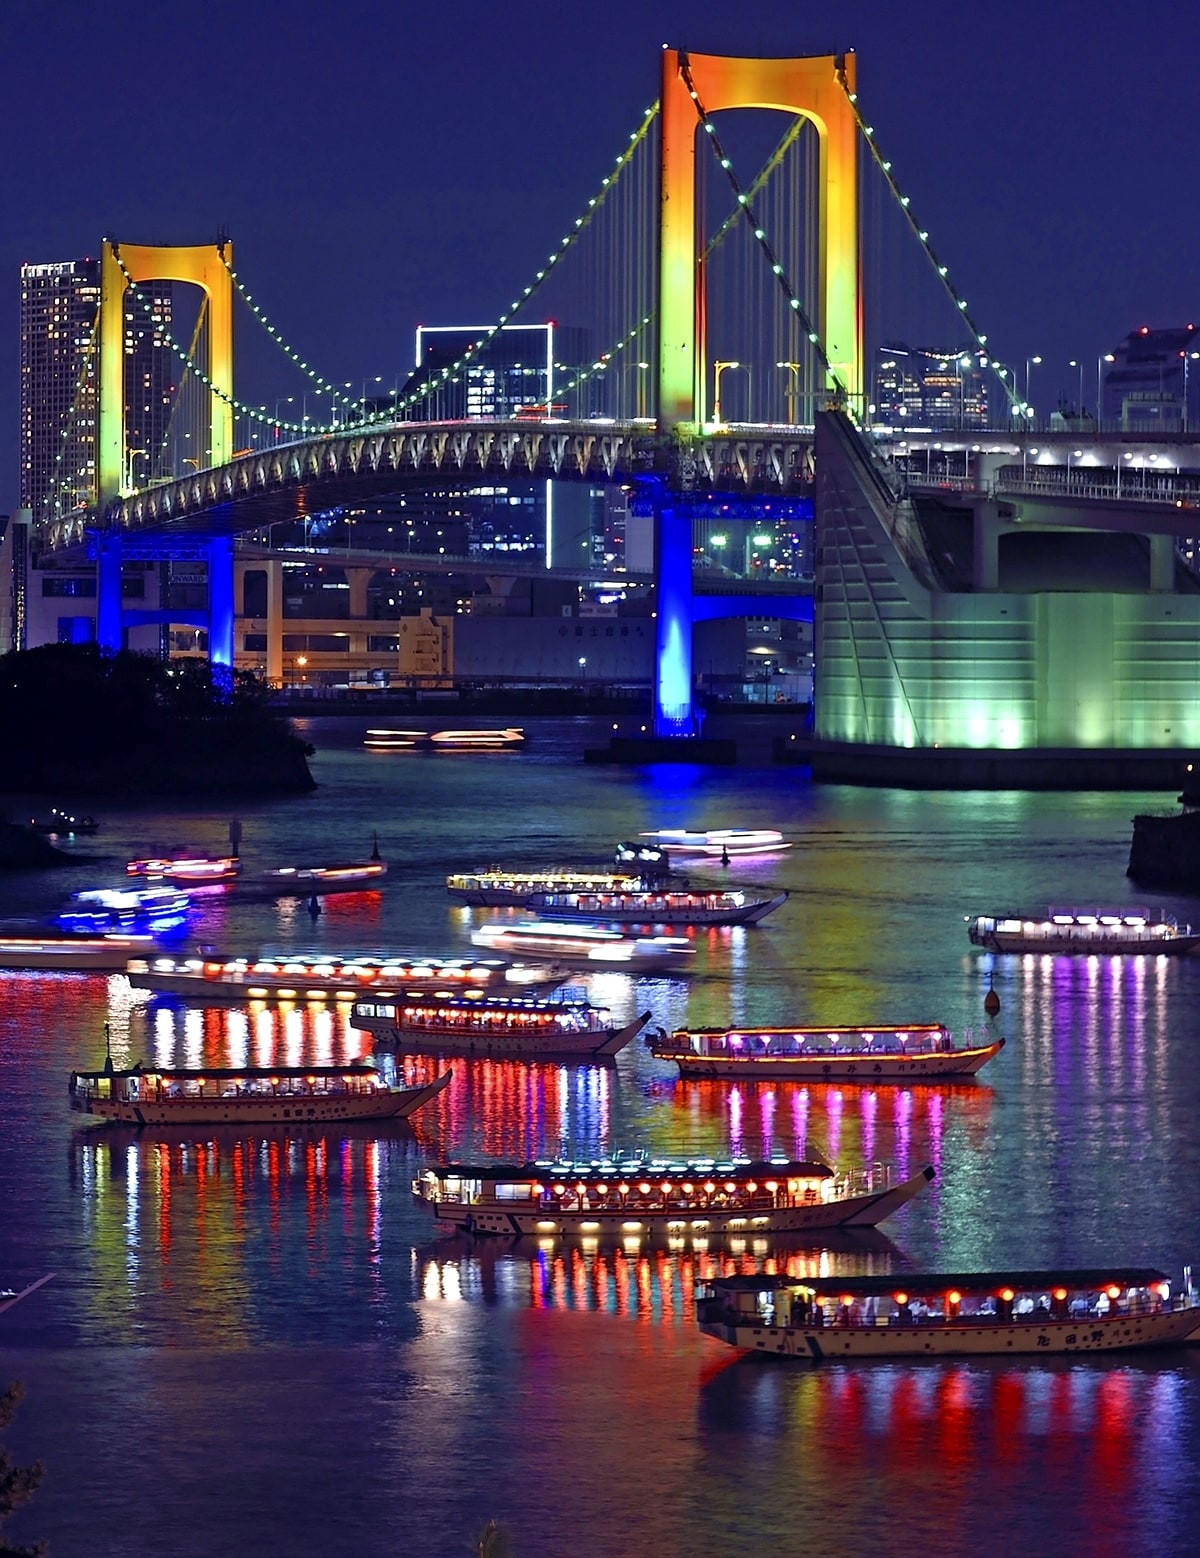 hoshinoya tokyo river cruise